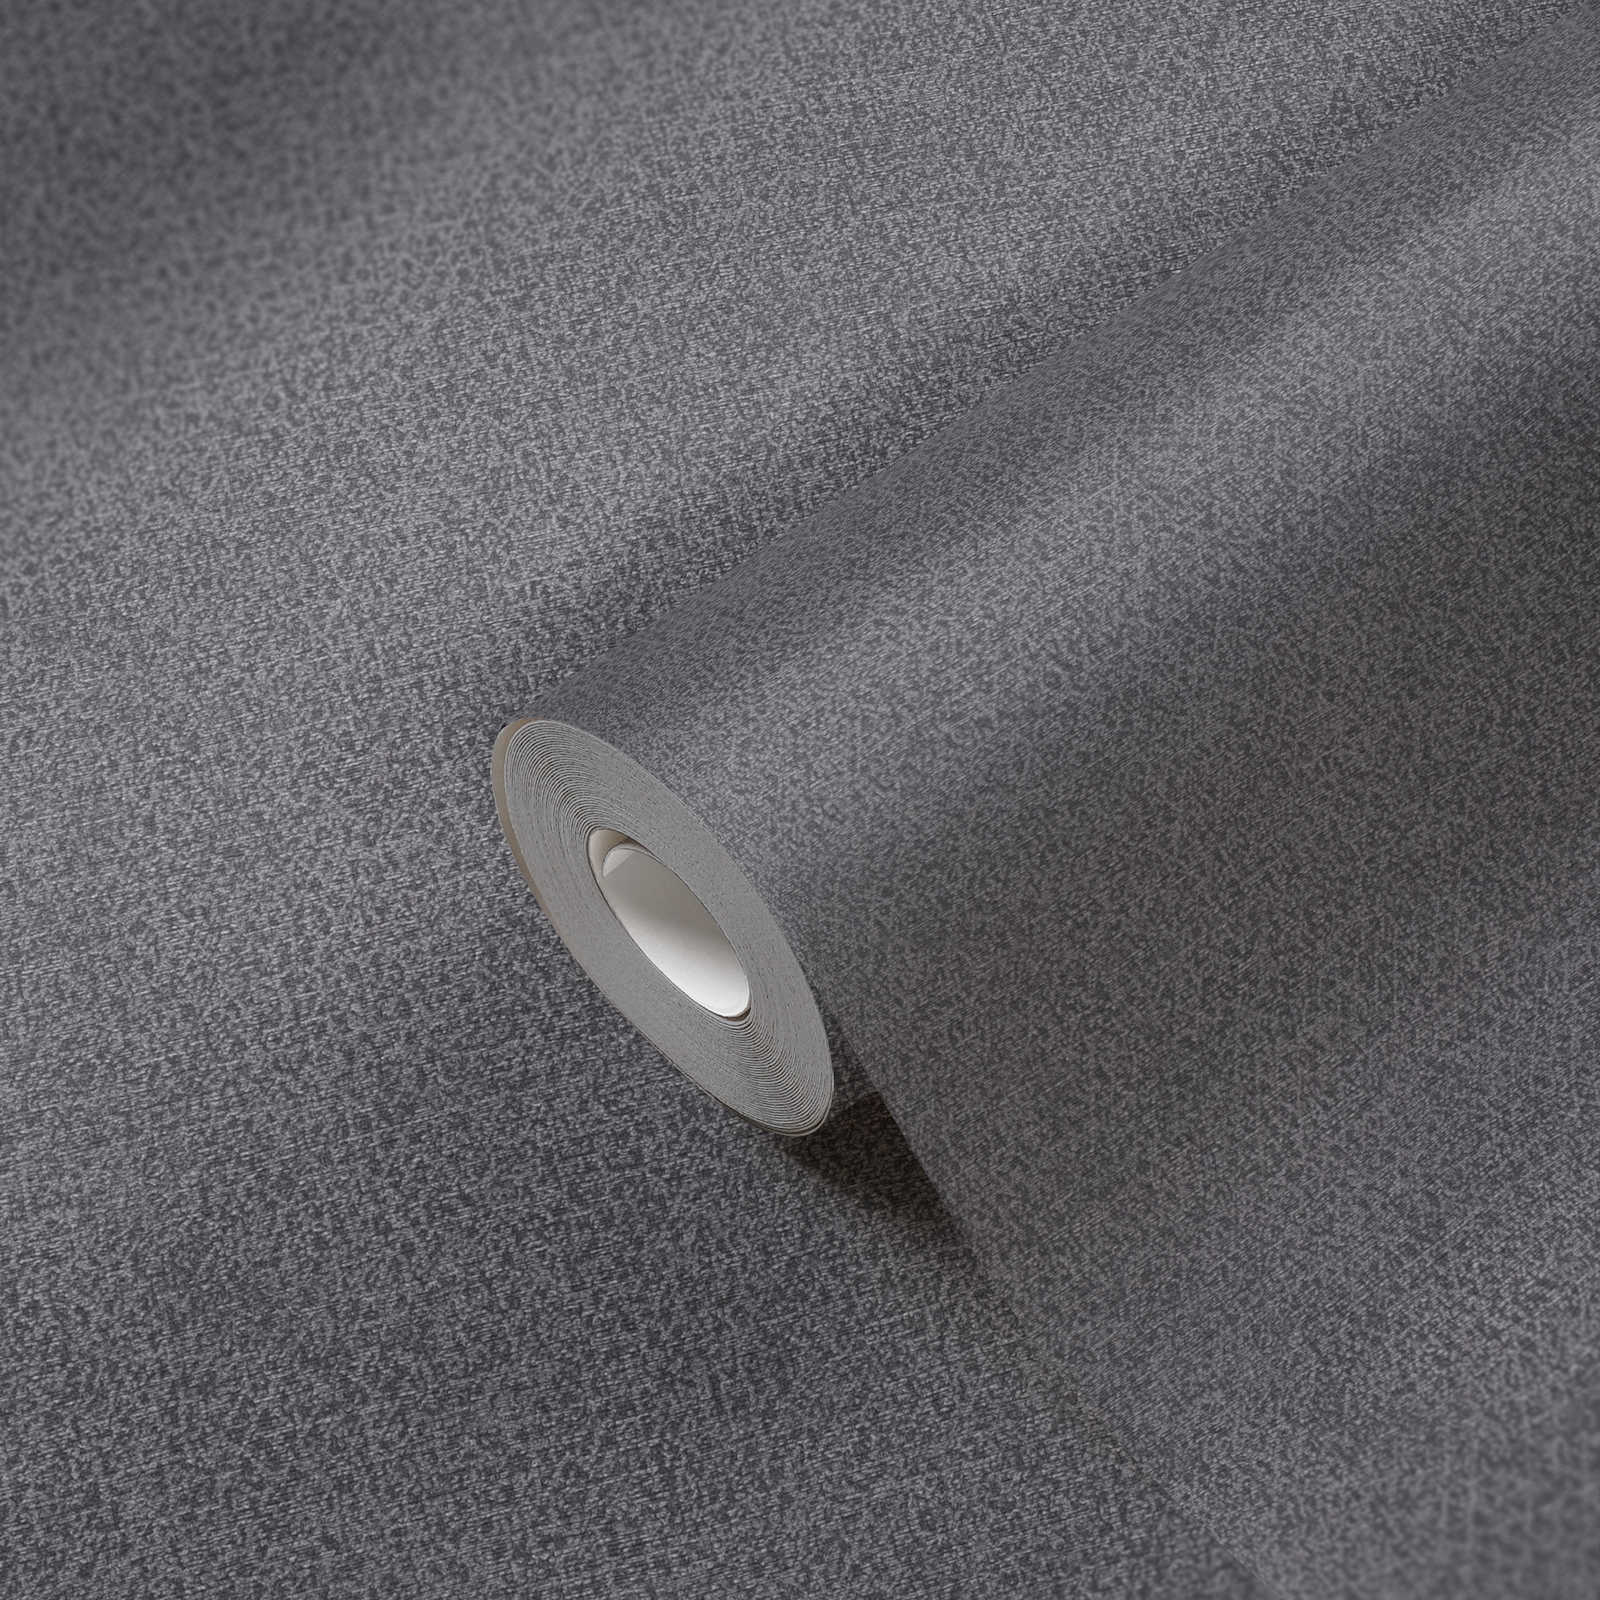             Vliestapete PVC-frei mit Glanzmuster – Schwarz, Silber
        